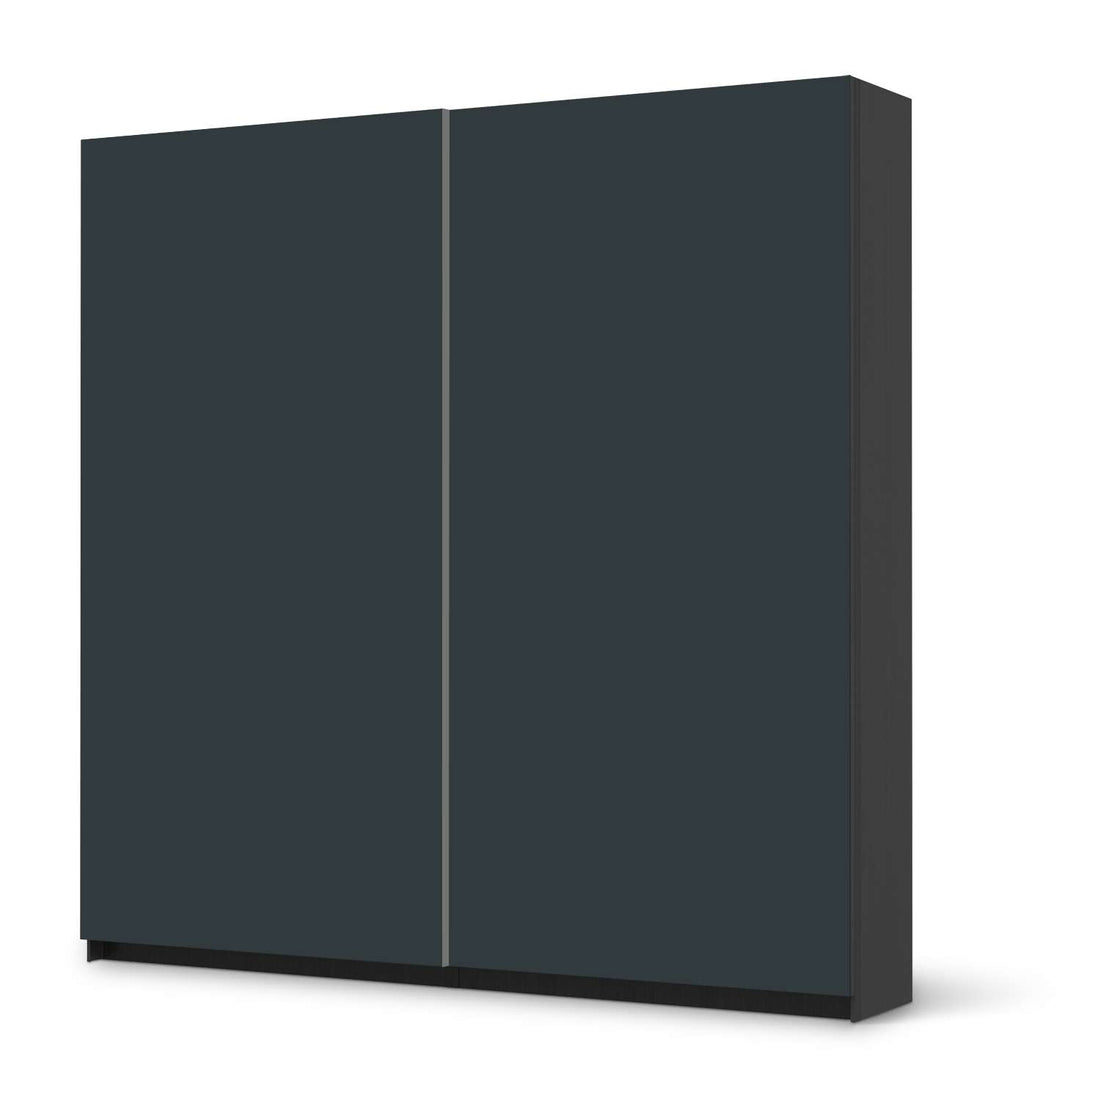 Möbel Klebefolie Blaugrau Dark - IKEA Pax Schrank 201 cm Höhe - Schiebetür - schwarz